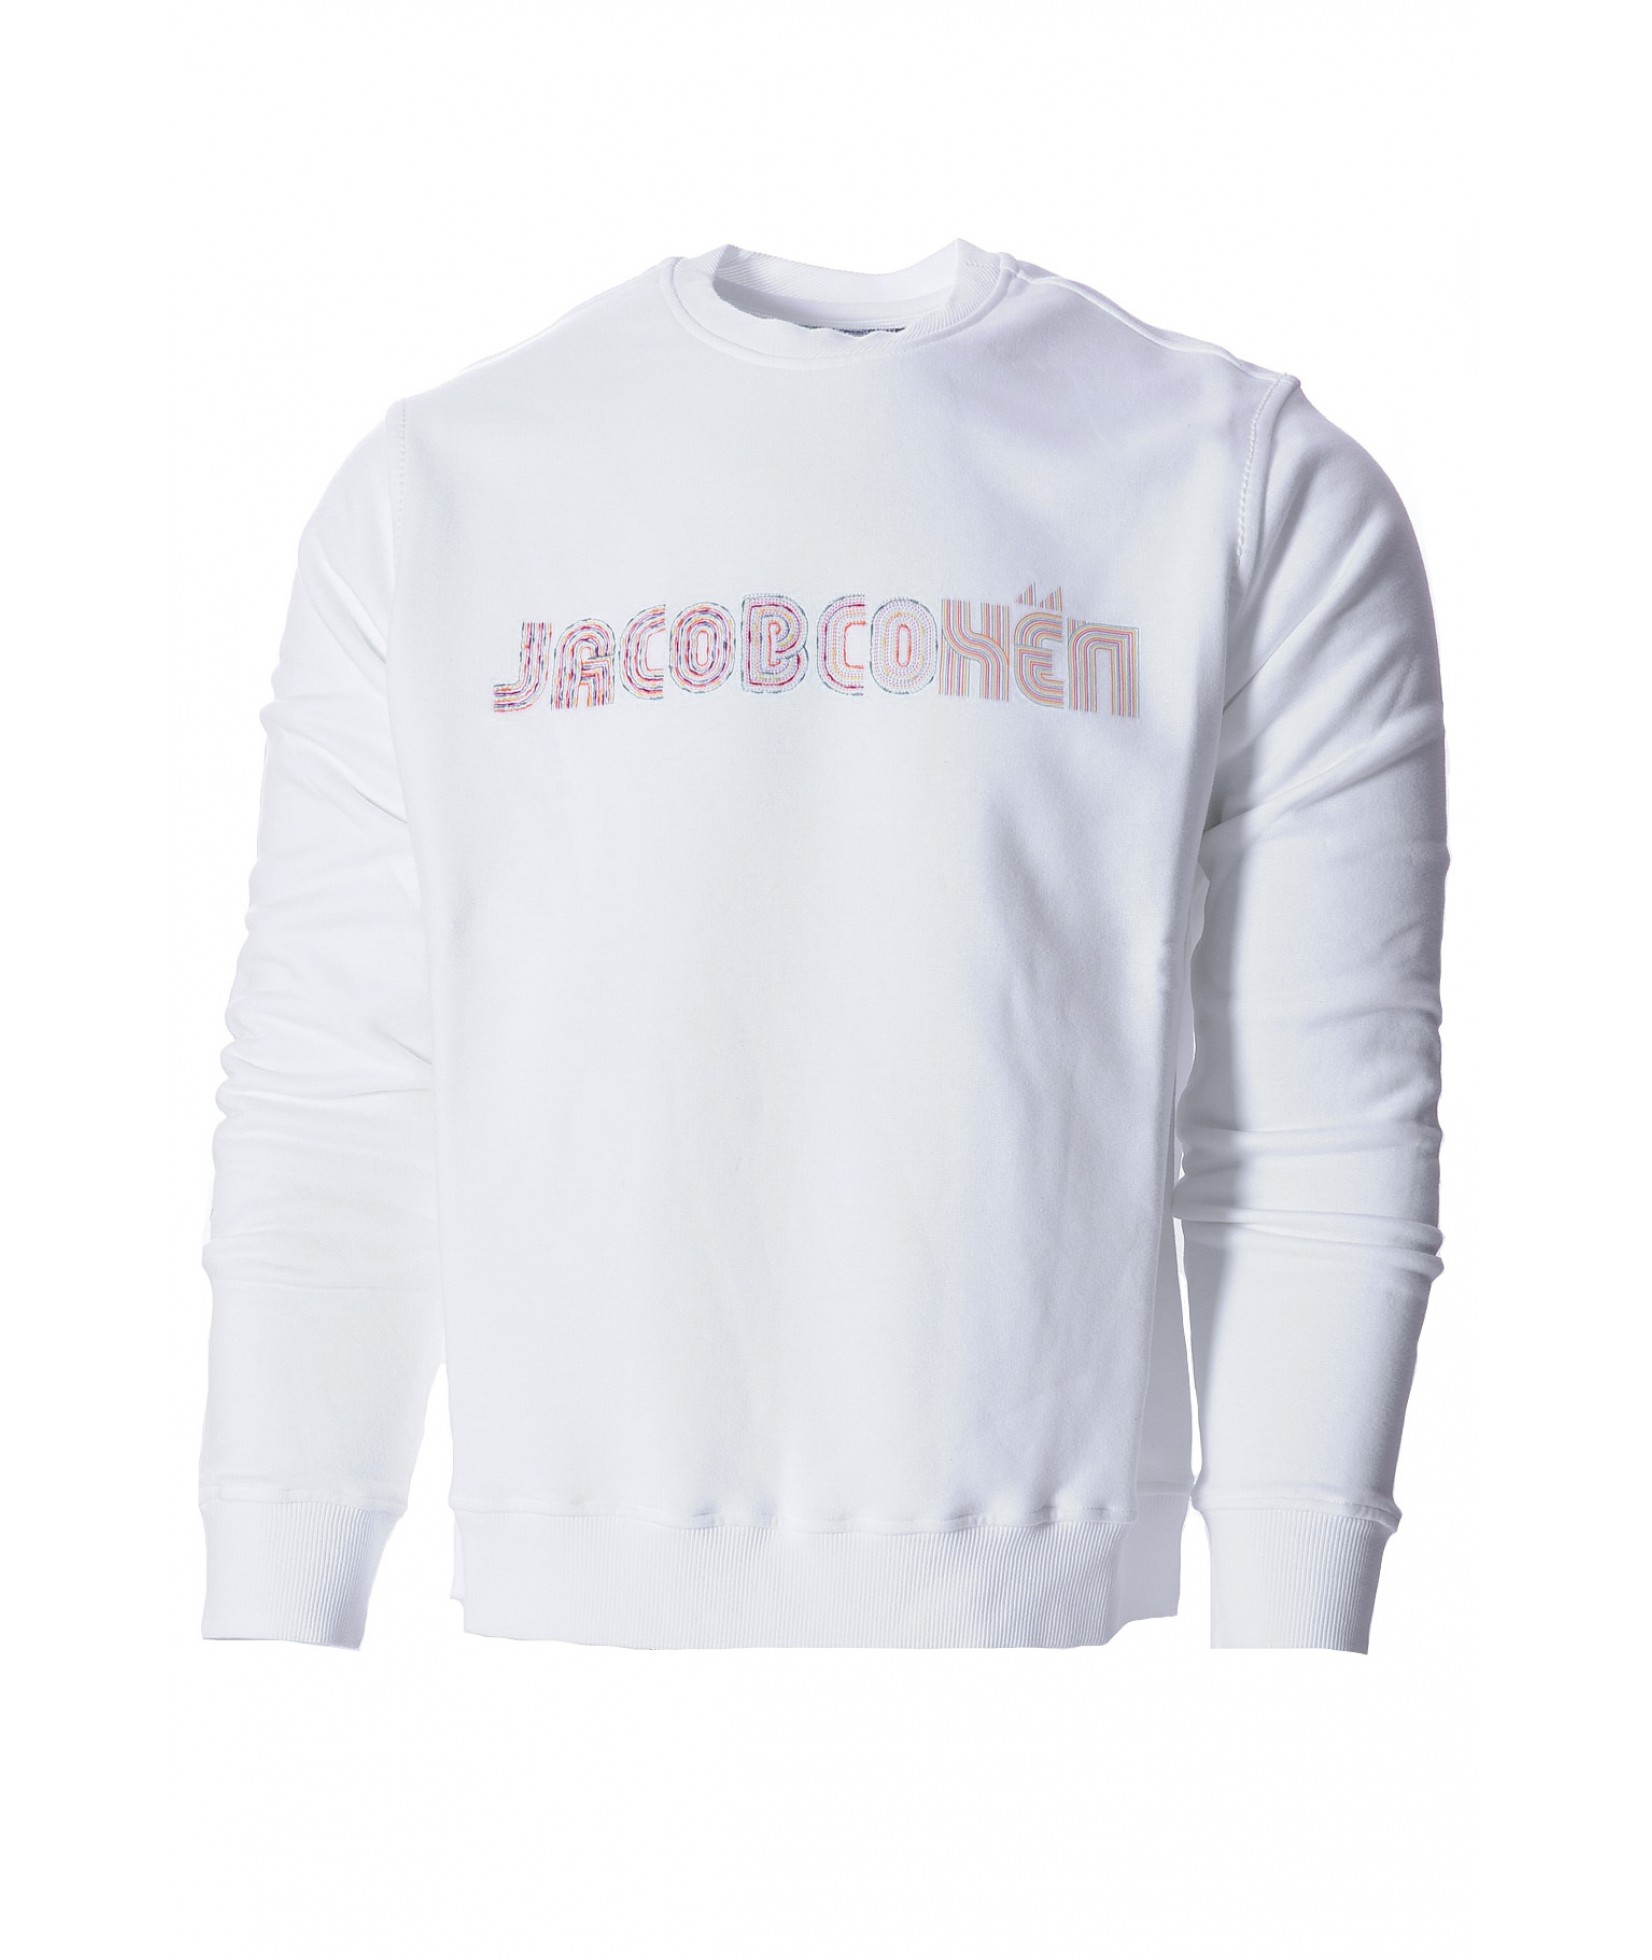 Jacob Cohën sweater white (35607)